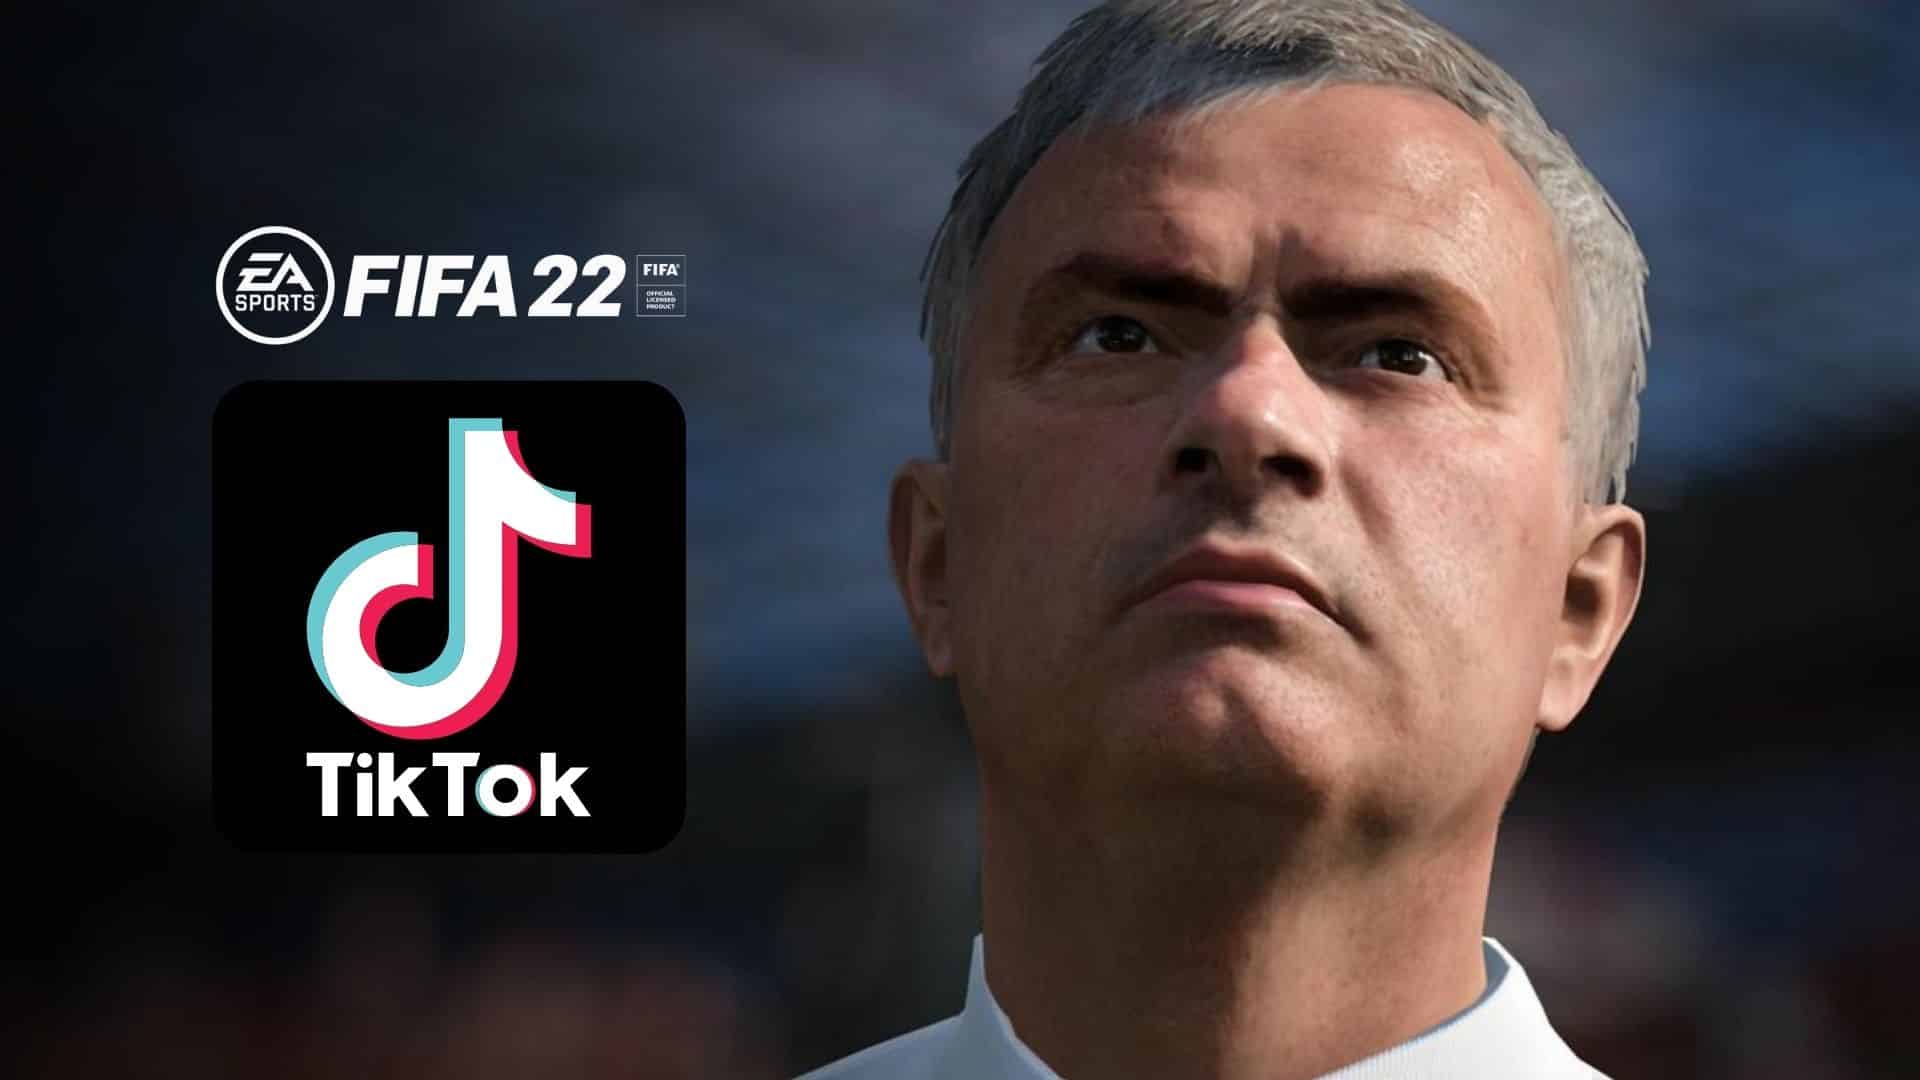 fifa 22 mourinho and a tiktok logo